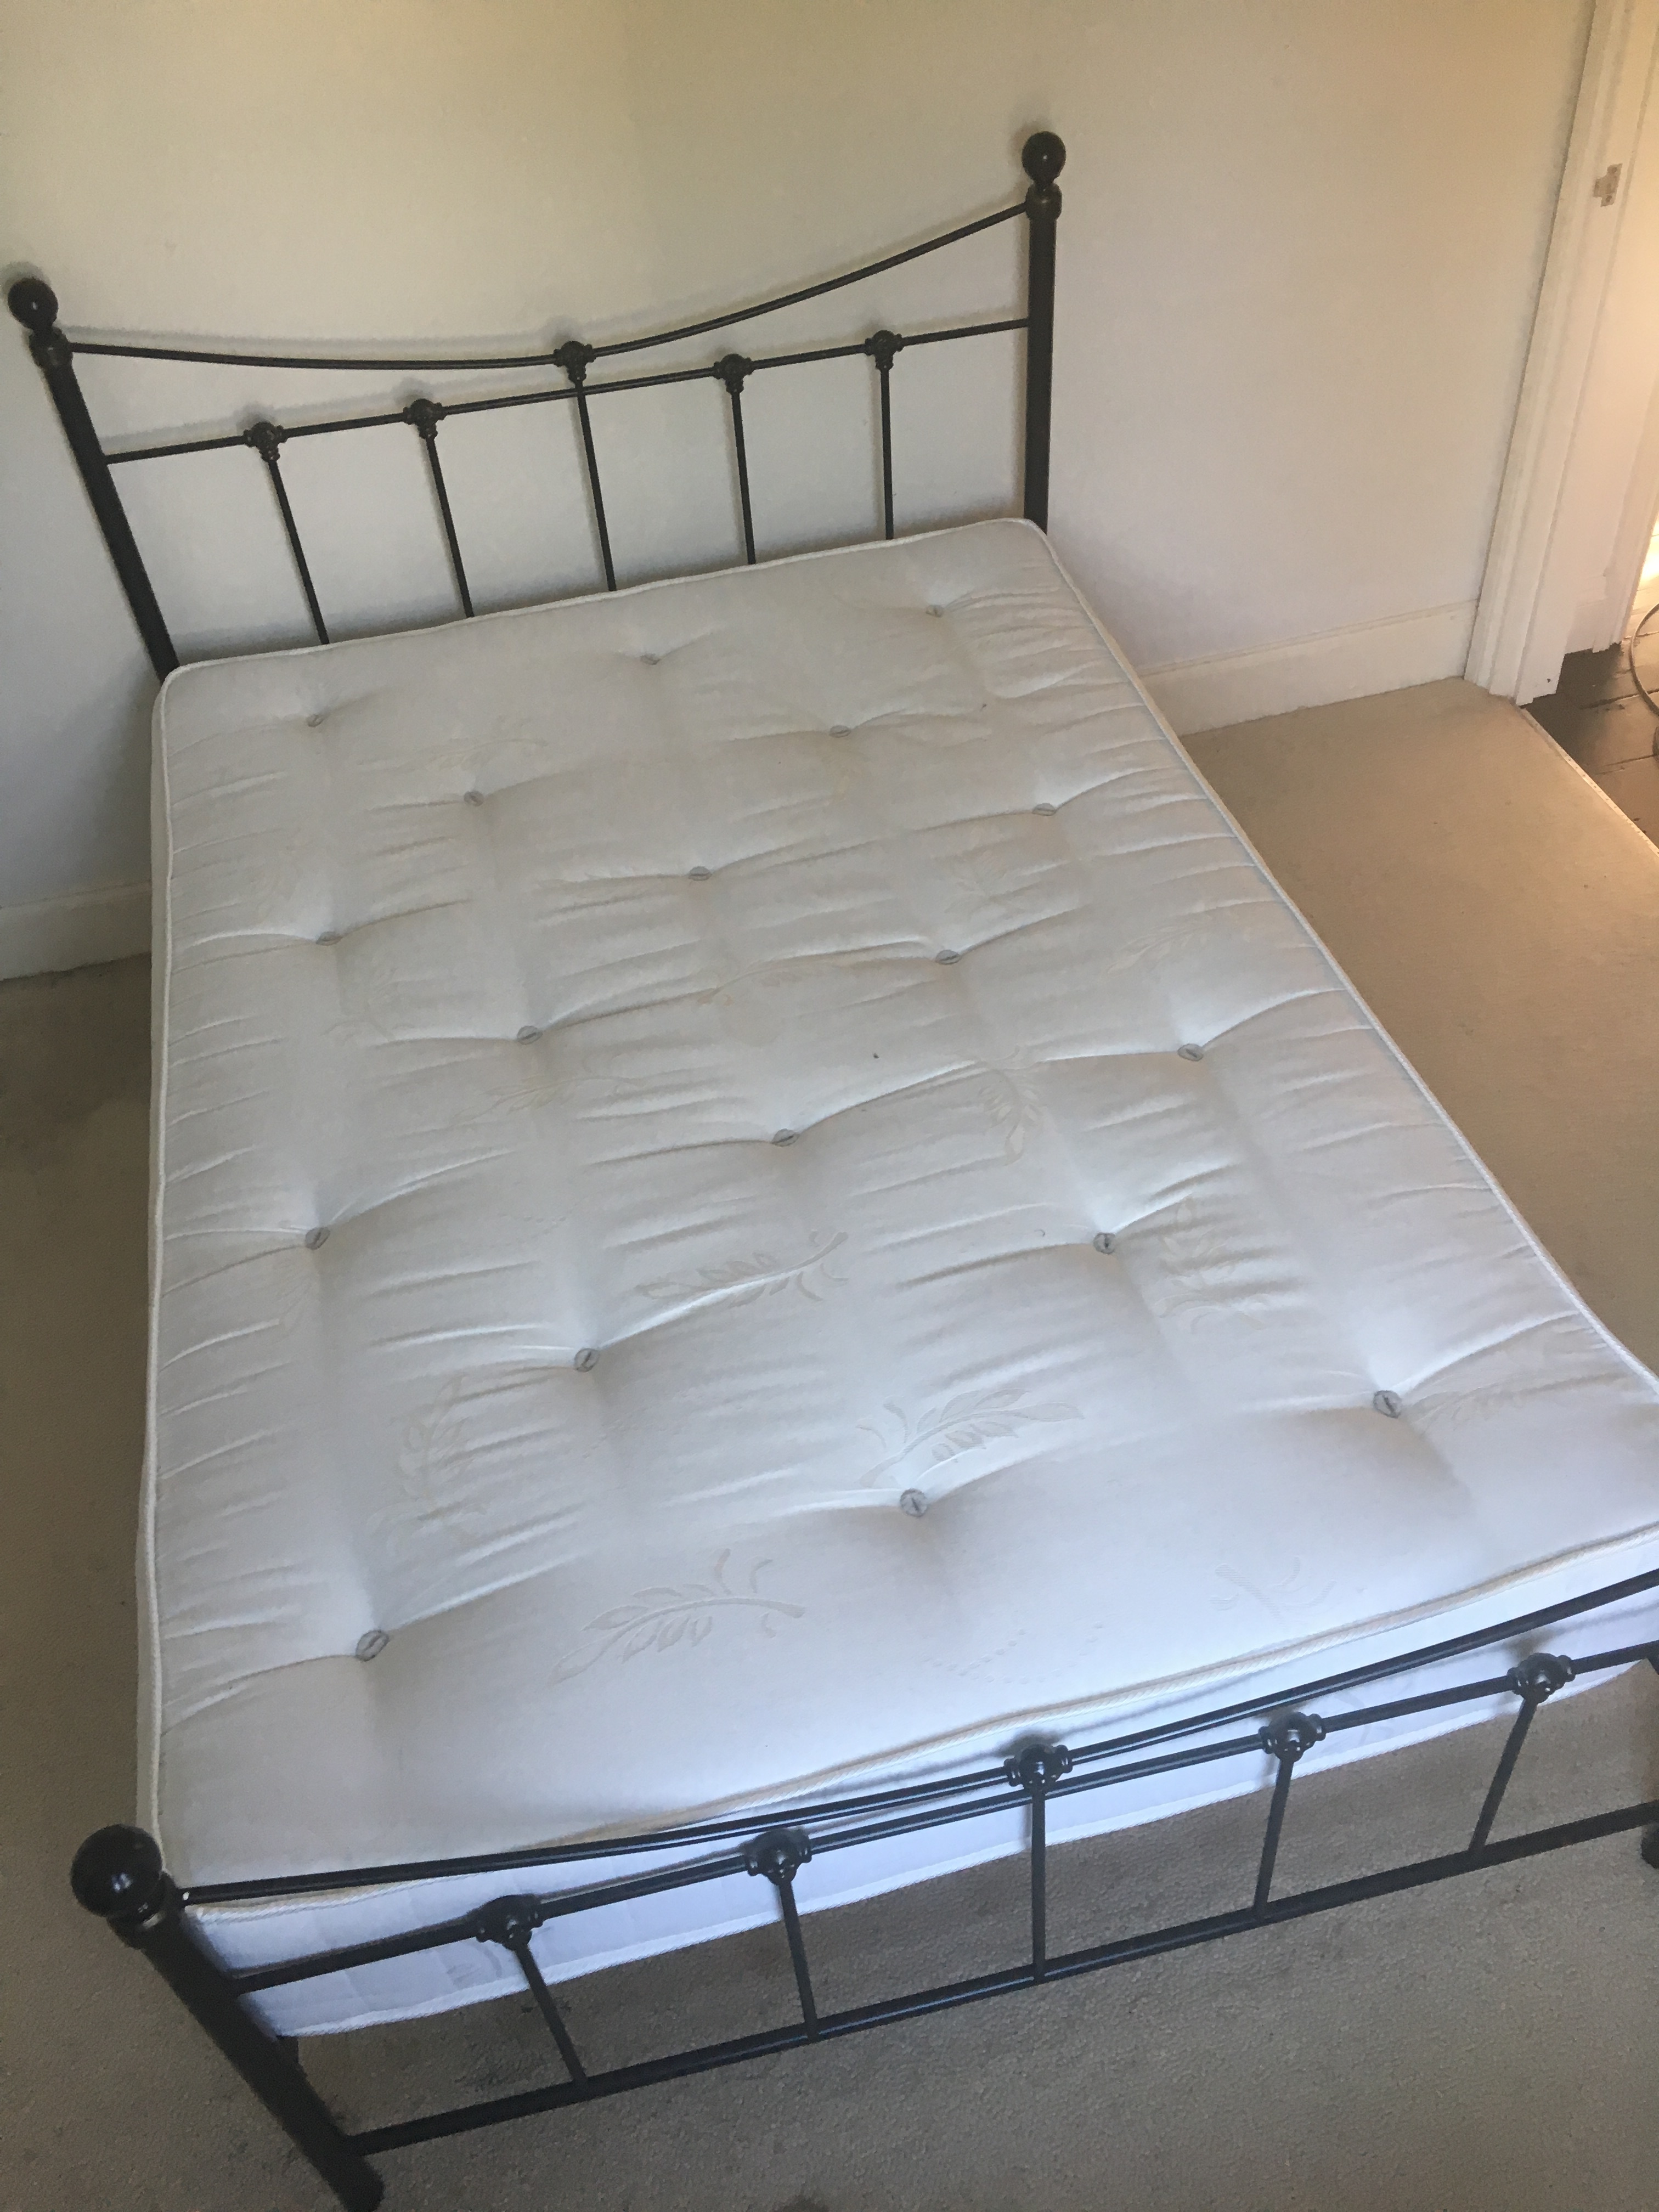 sale mattress near me